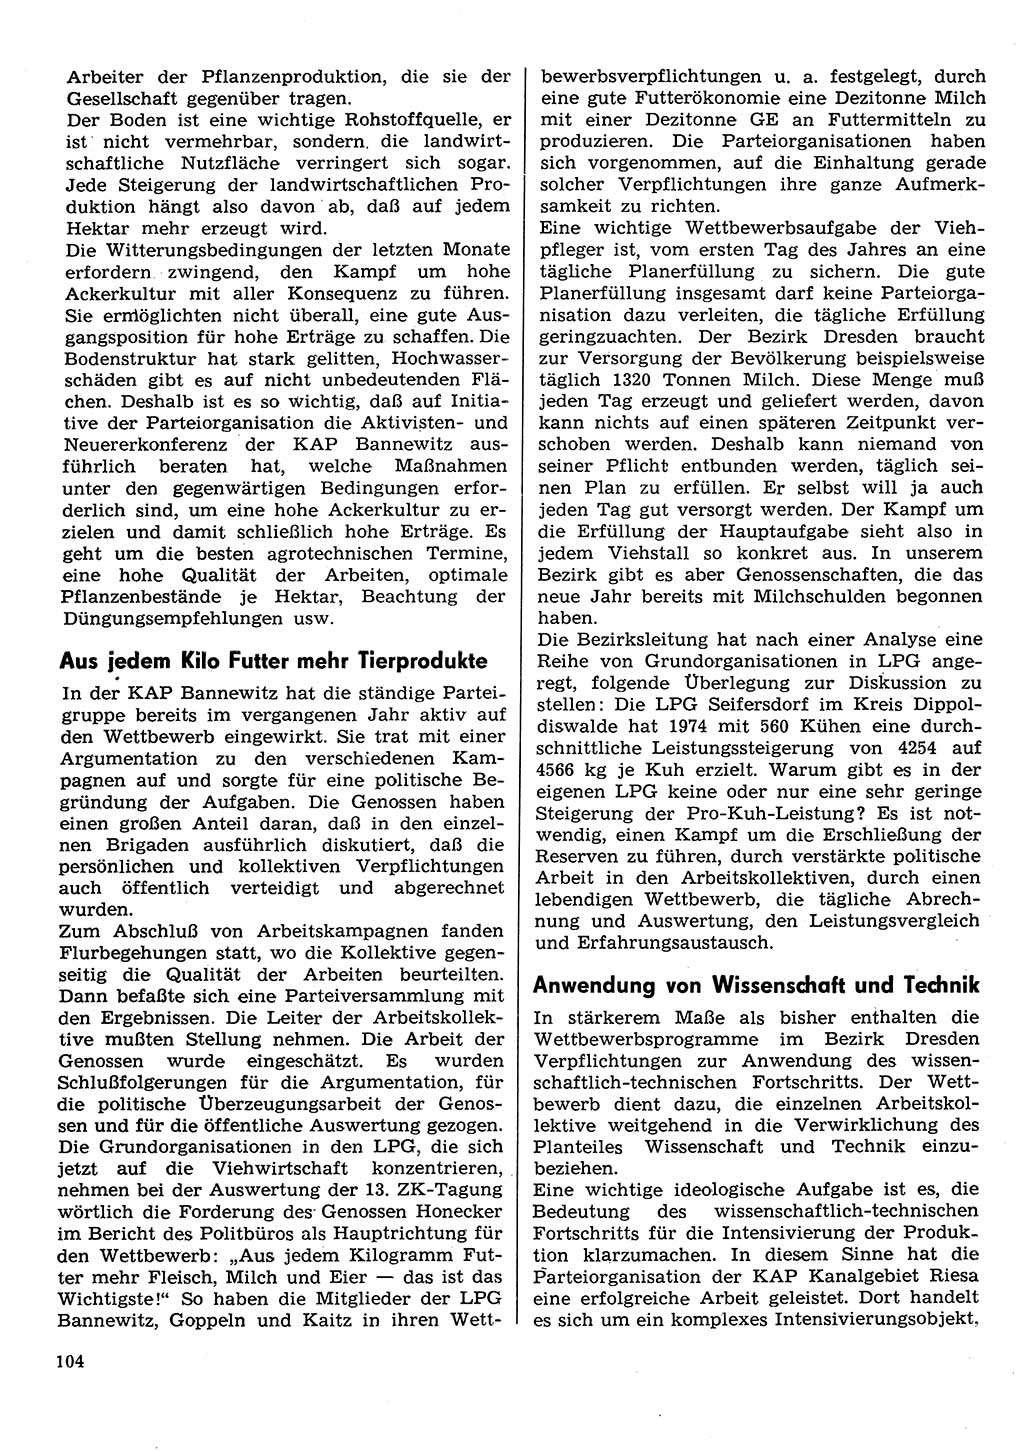 Neuer Weg (NW), Organ des Zentralkomitees (ZK) der SED (Sozialistische Einheitspartei Deutschlands) für Fragen des Parteilebens, 30. Jahrgang [Deutsche Demokratische Republik (DDR)] 1975, Seite 104 (NW ZK SED DDR 1975, S. 104)